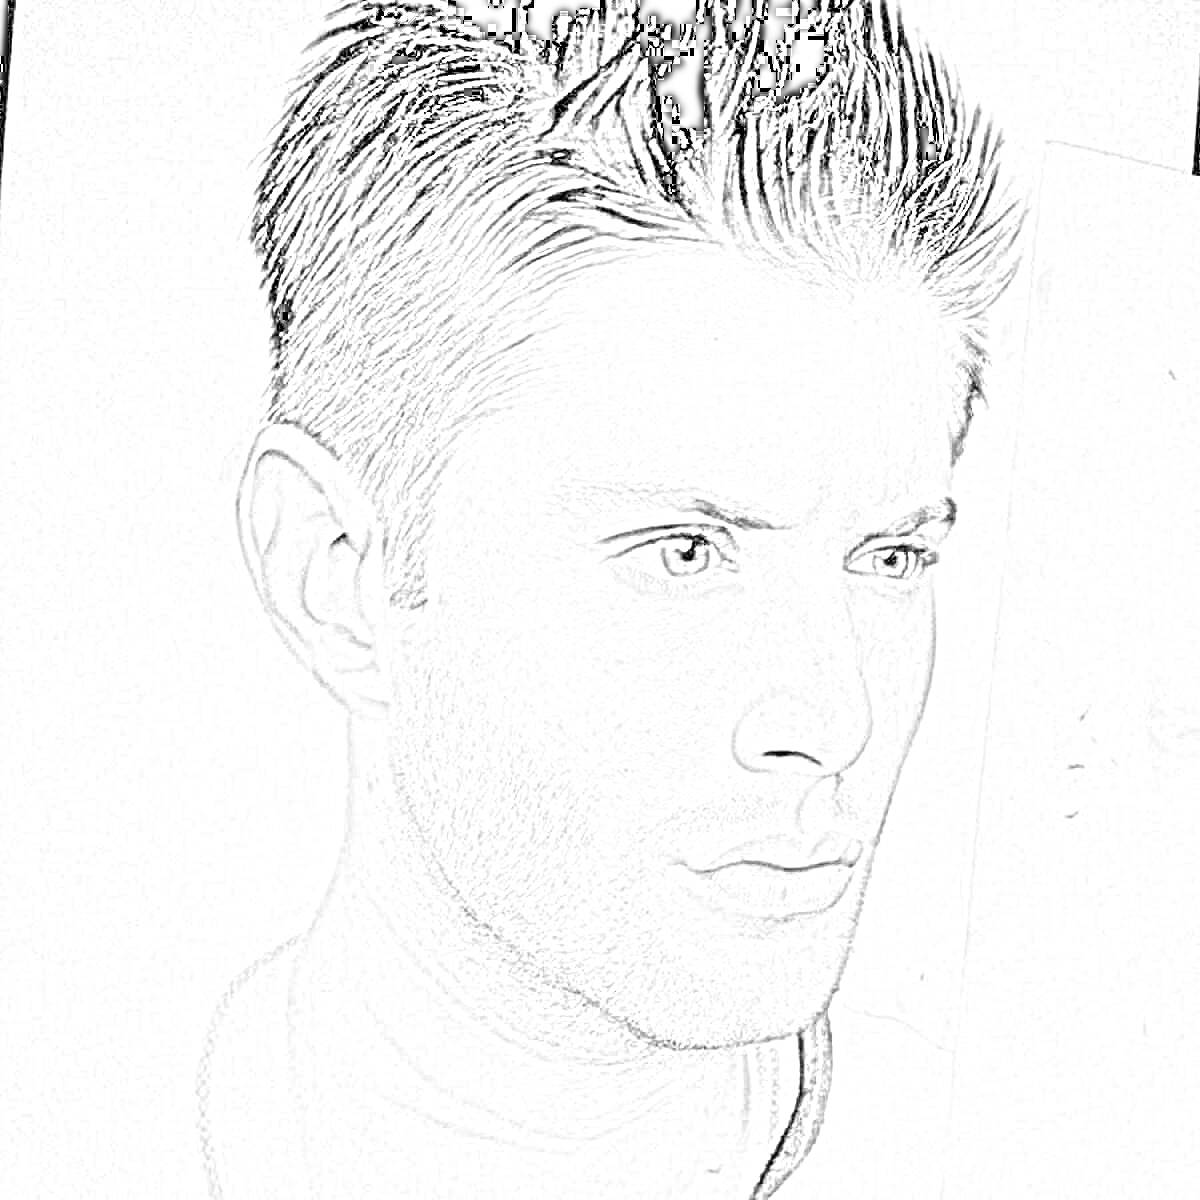 Раскраска Портрет мужчины с короткими волосами, черно-белая раскраска